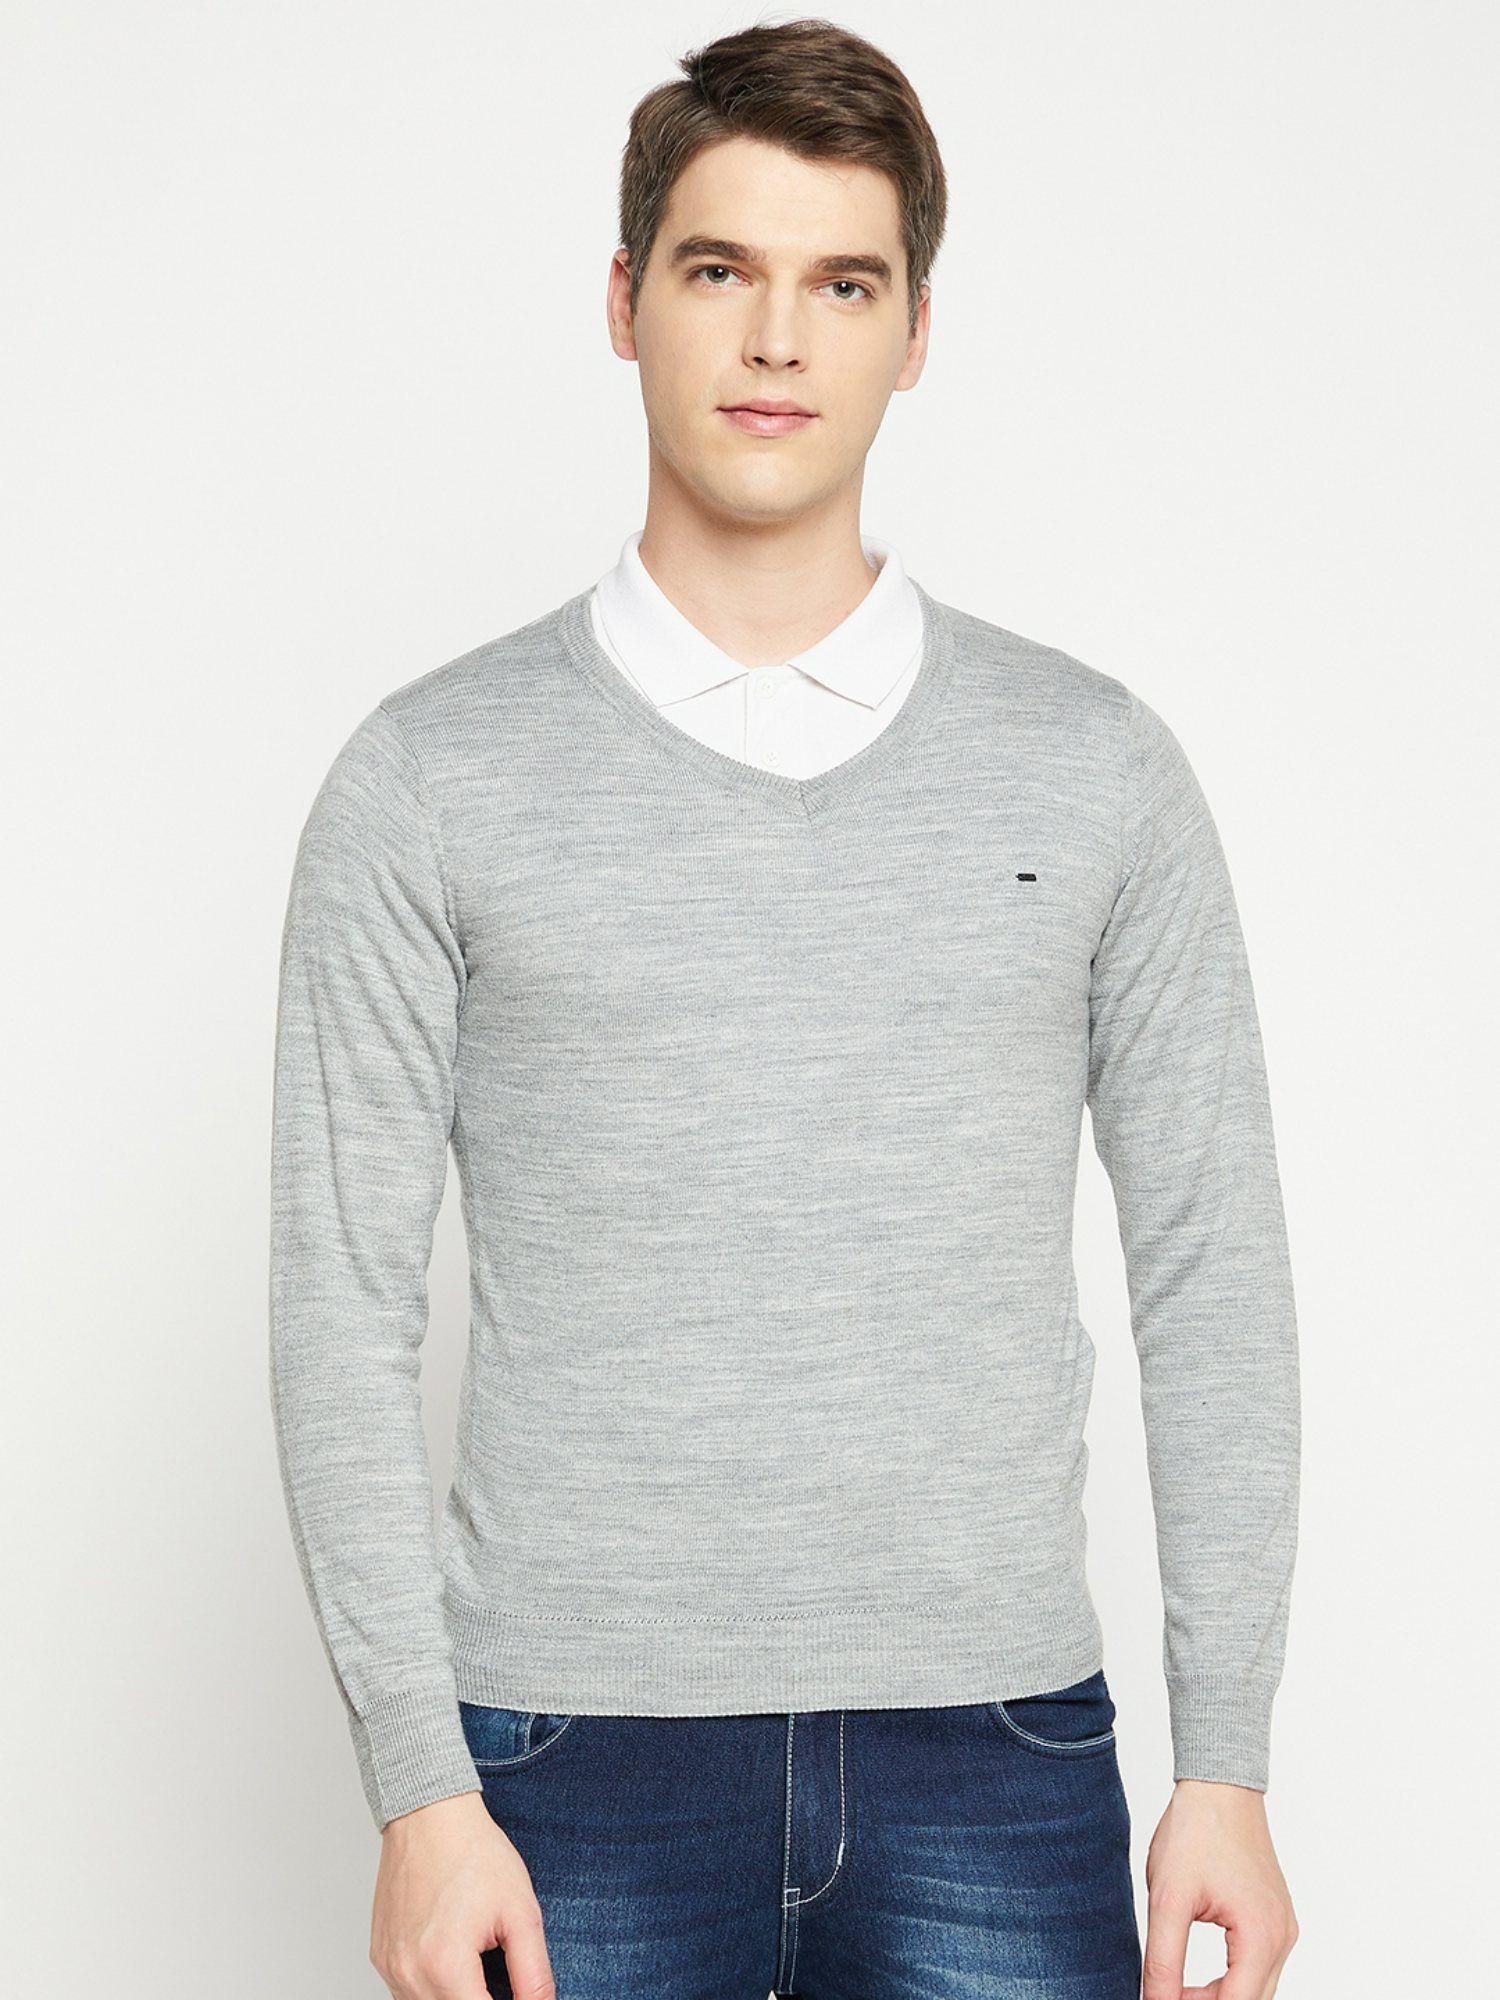 men-grey-melange-solid-acrylic-vee-neck-sweater